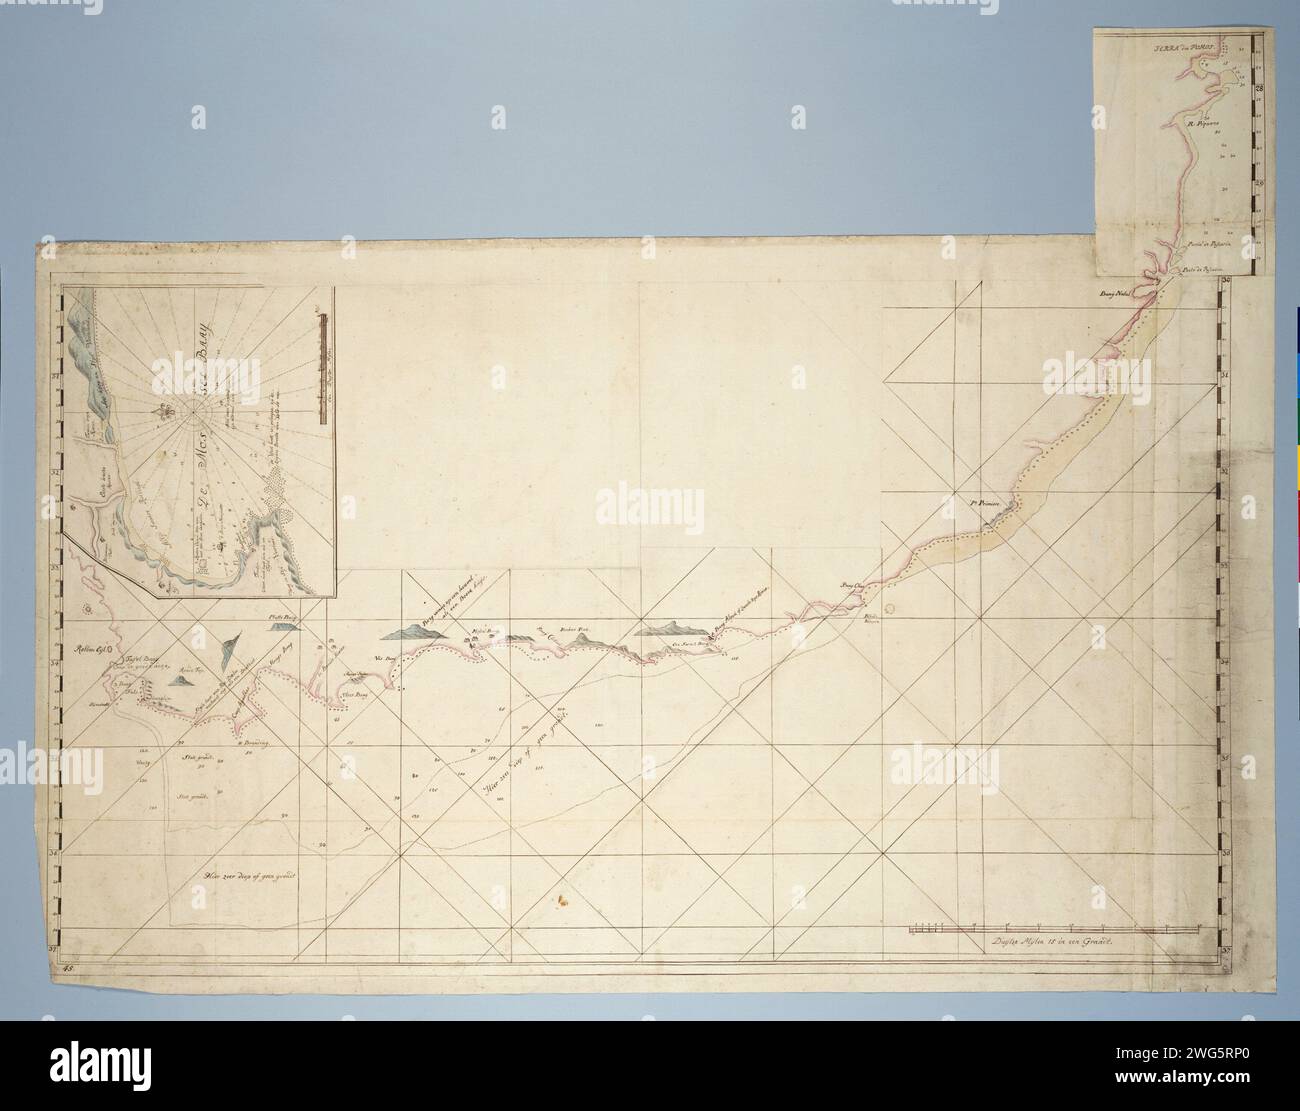 Mappa della costa da Saldanha Bay a Richard's Bay, con una mappa dettagliata di Mossel Bay inserita, c. 1777 - 1778 che disegna la mappa globalmente costeggia la costa da baldanhabaaai a ovest a Richardsbaai a est; sbloccato per mezzo di una carta guida, divisa tra la metà sinistra e la metà destra, numerate i e II, con latitudini; la mappa dettagliata di Mosselbaai è divisa in una metà superiore e una inferiore, numerate A e B. carta della Provincia del Capo. inchiostro. matita. pennarello/pennello per acquerello Foto Stock